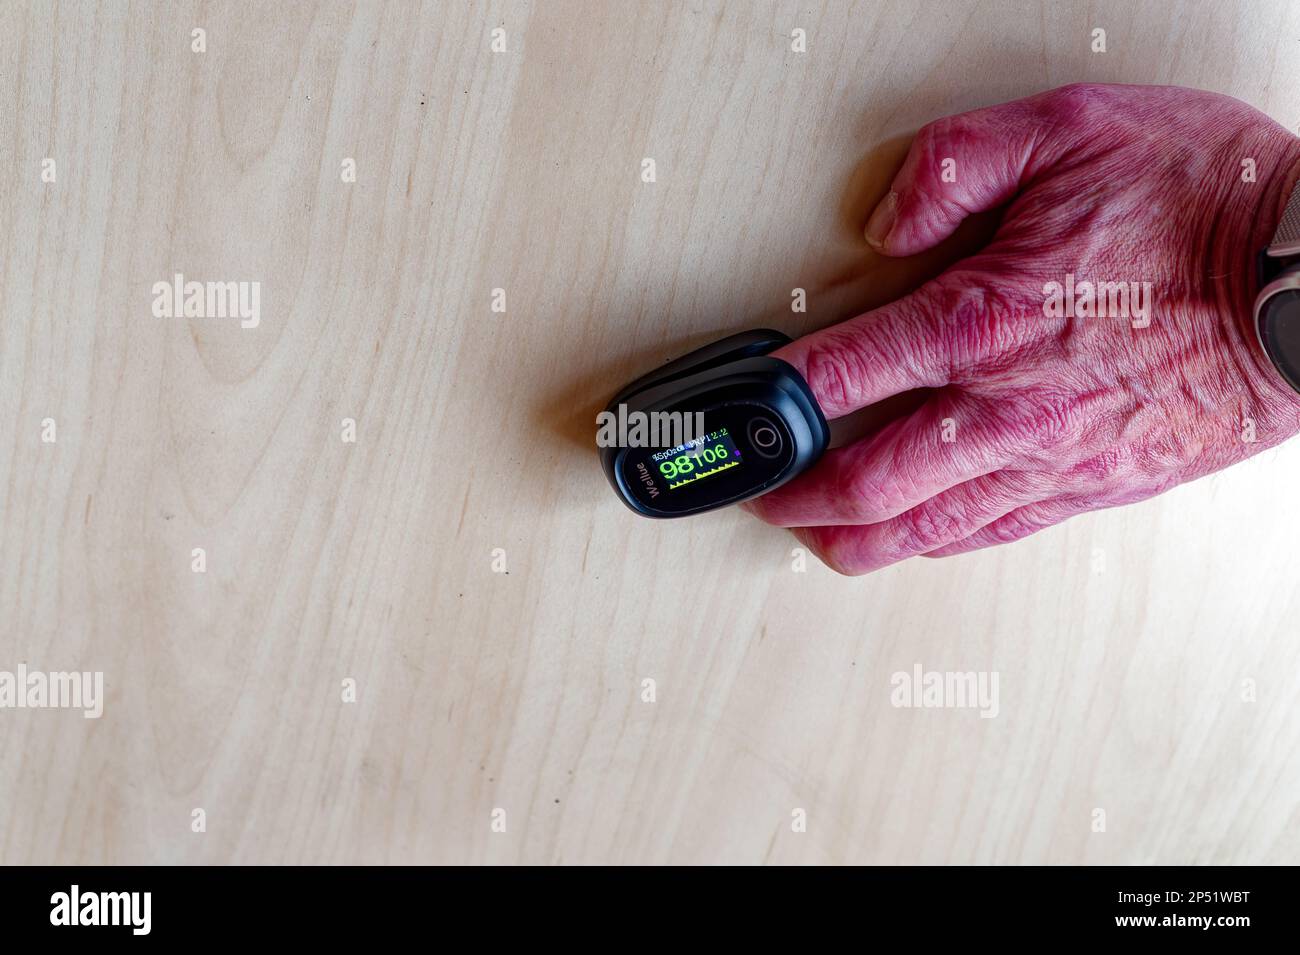 Medizinische Geräte: Pulsoxymeter zur Messung der Sauerstoffsättigung und  des Pulses am Finger Stockfotografie - Alamy